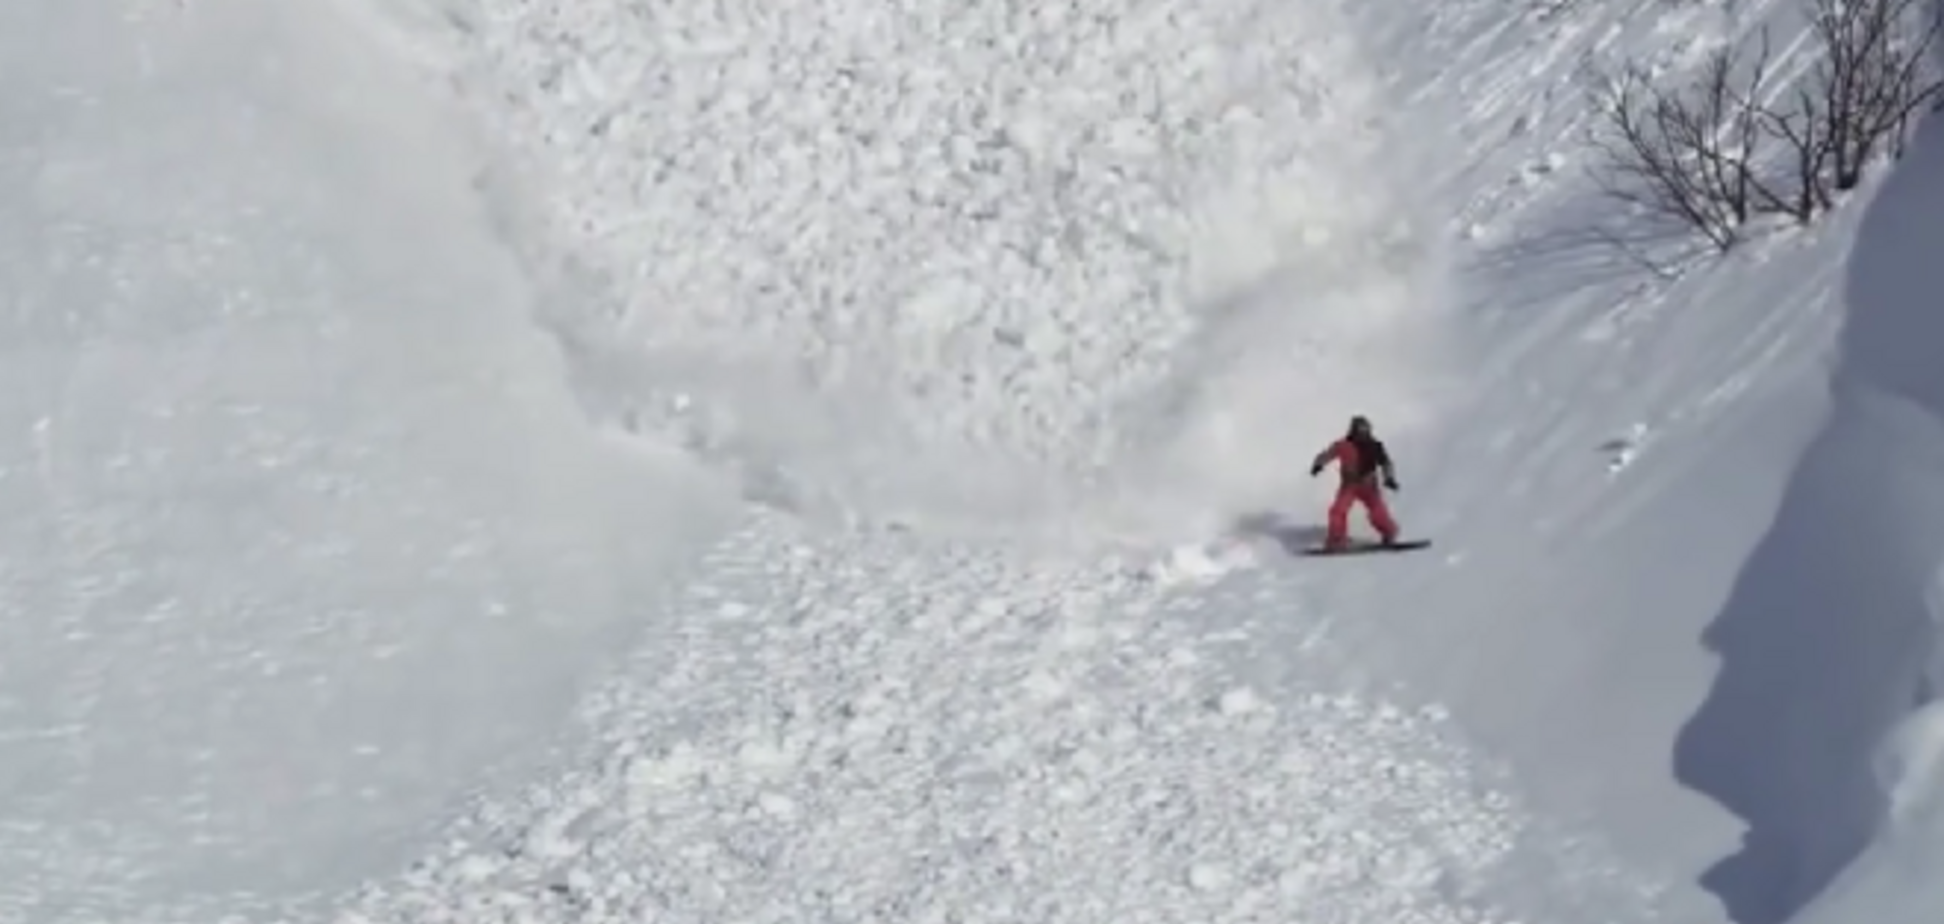 Отчаянный заяц промчал сквозь снежную лавину: опубликовано видео